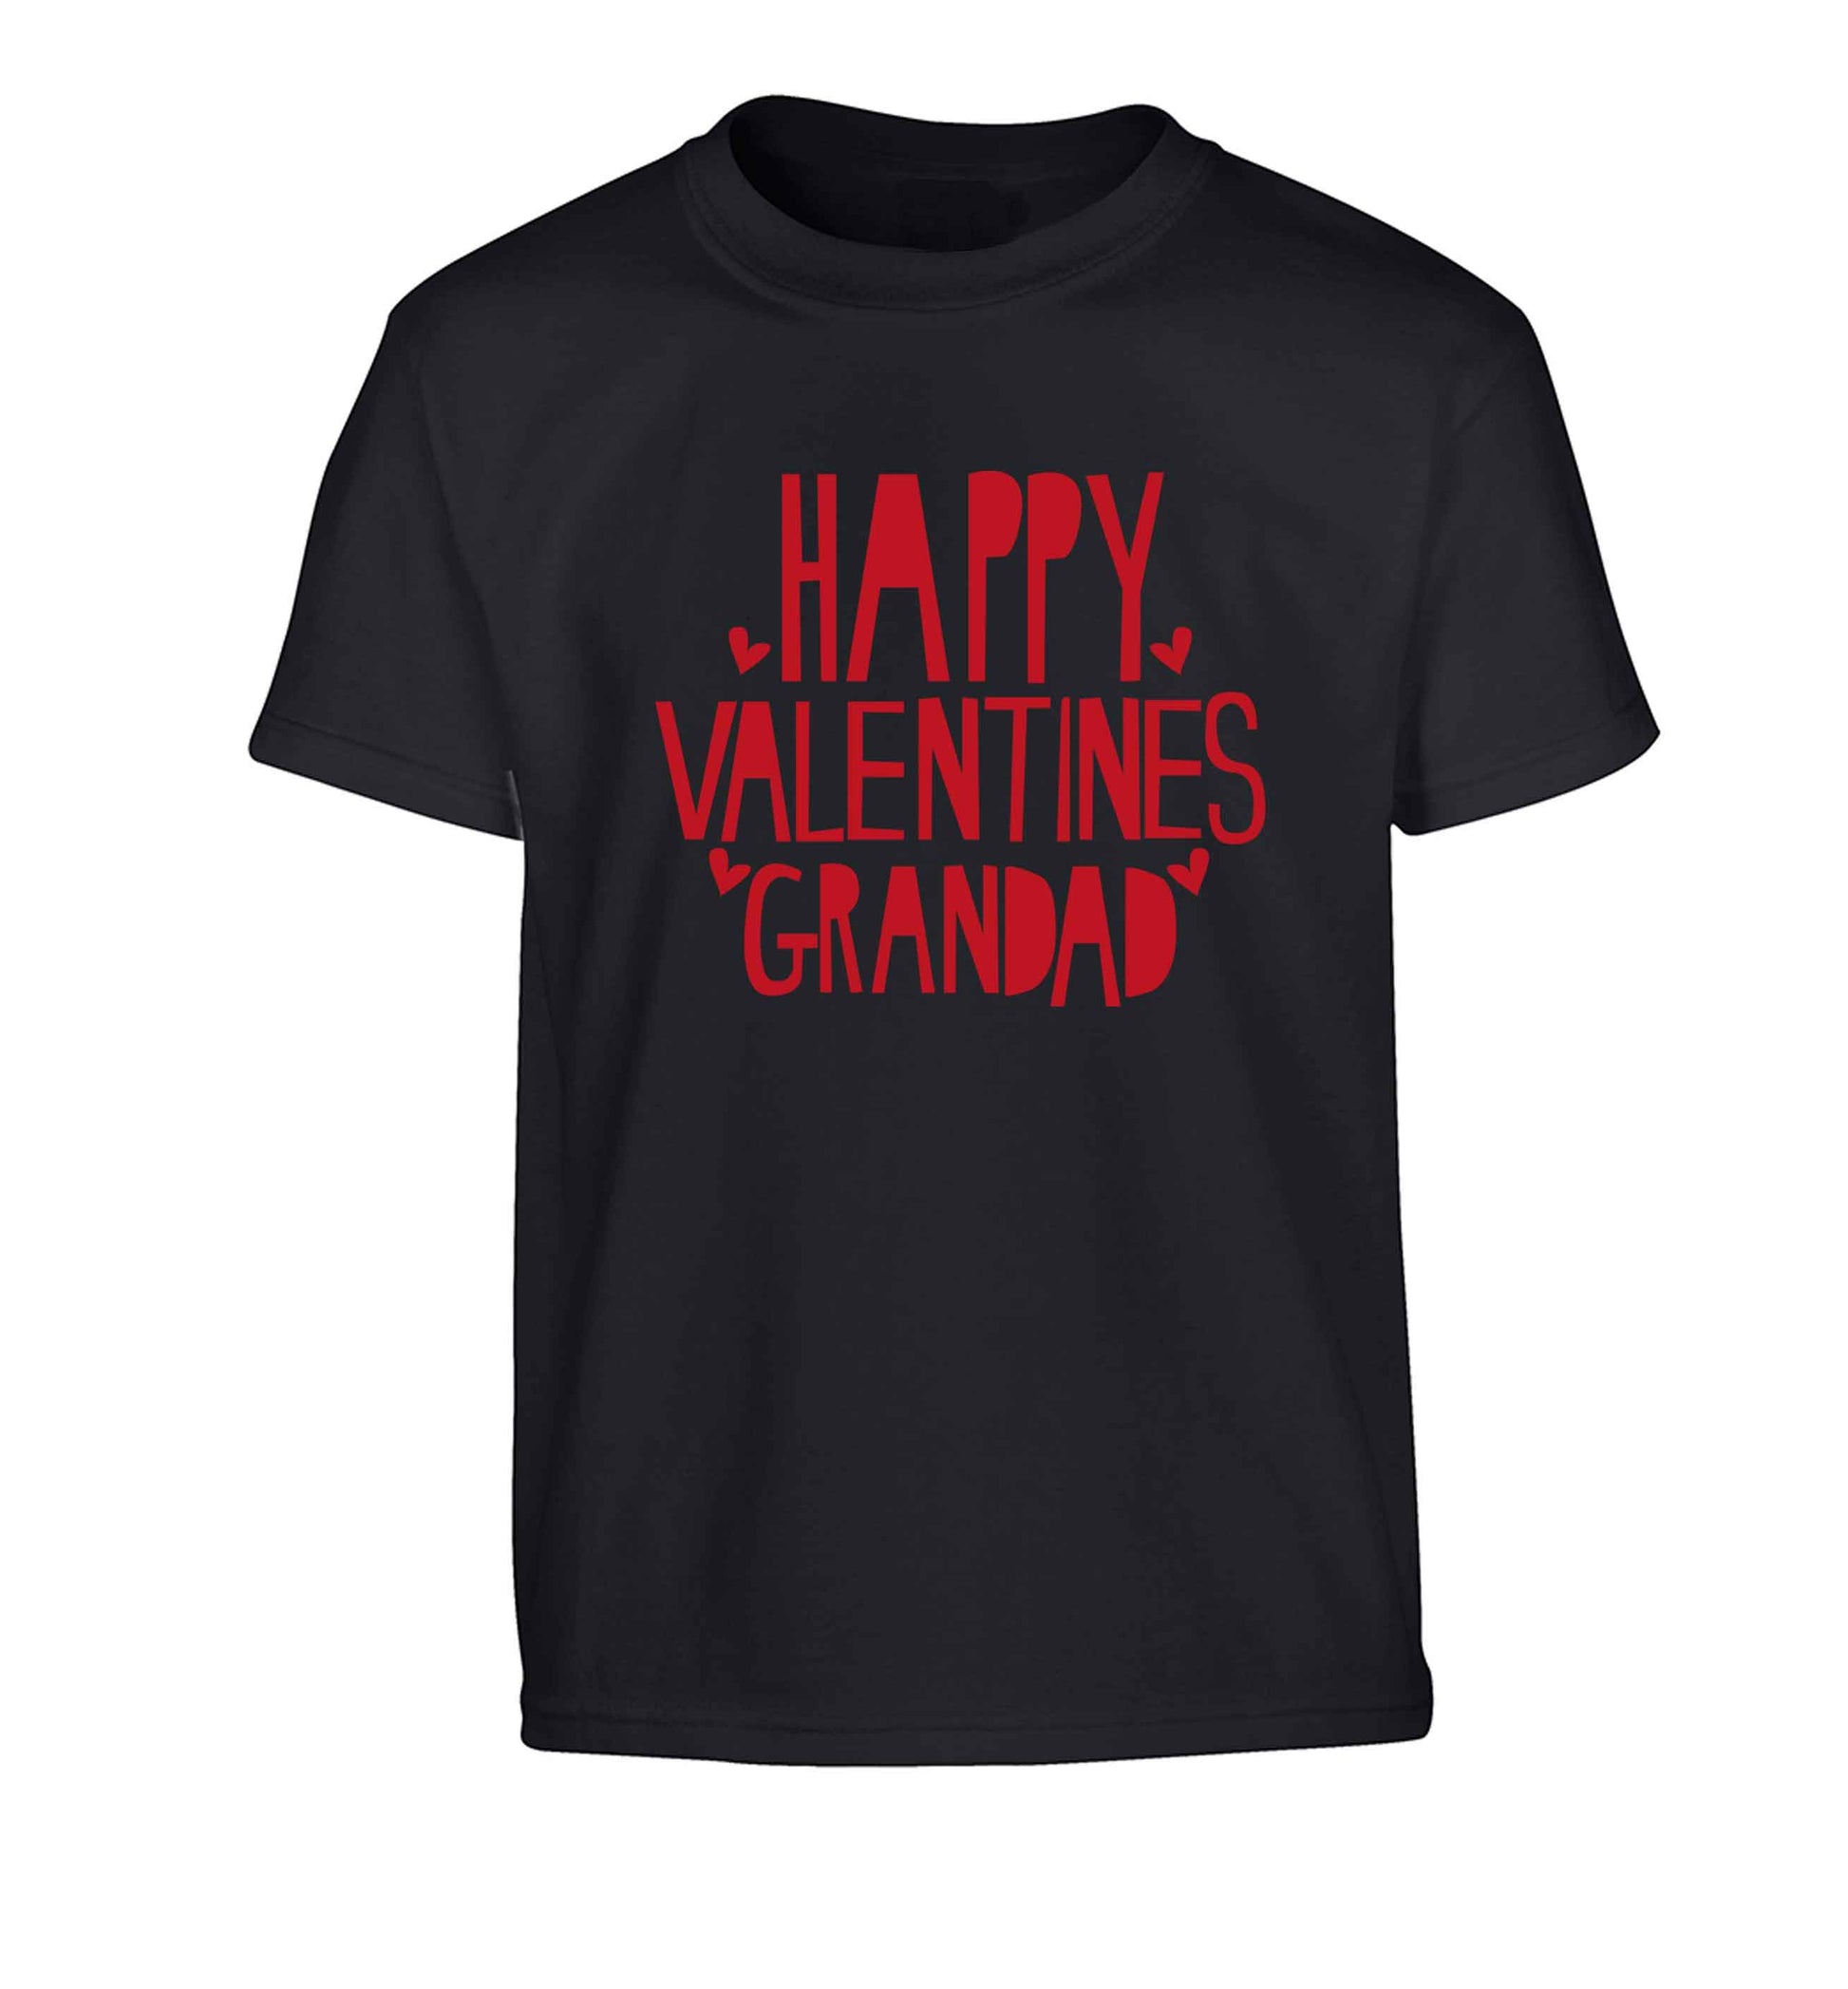 Happy valentines grandad Children's black Tshirt 12-13 Years